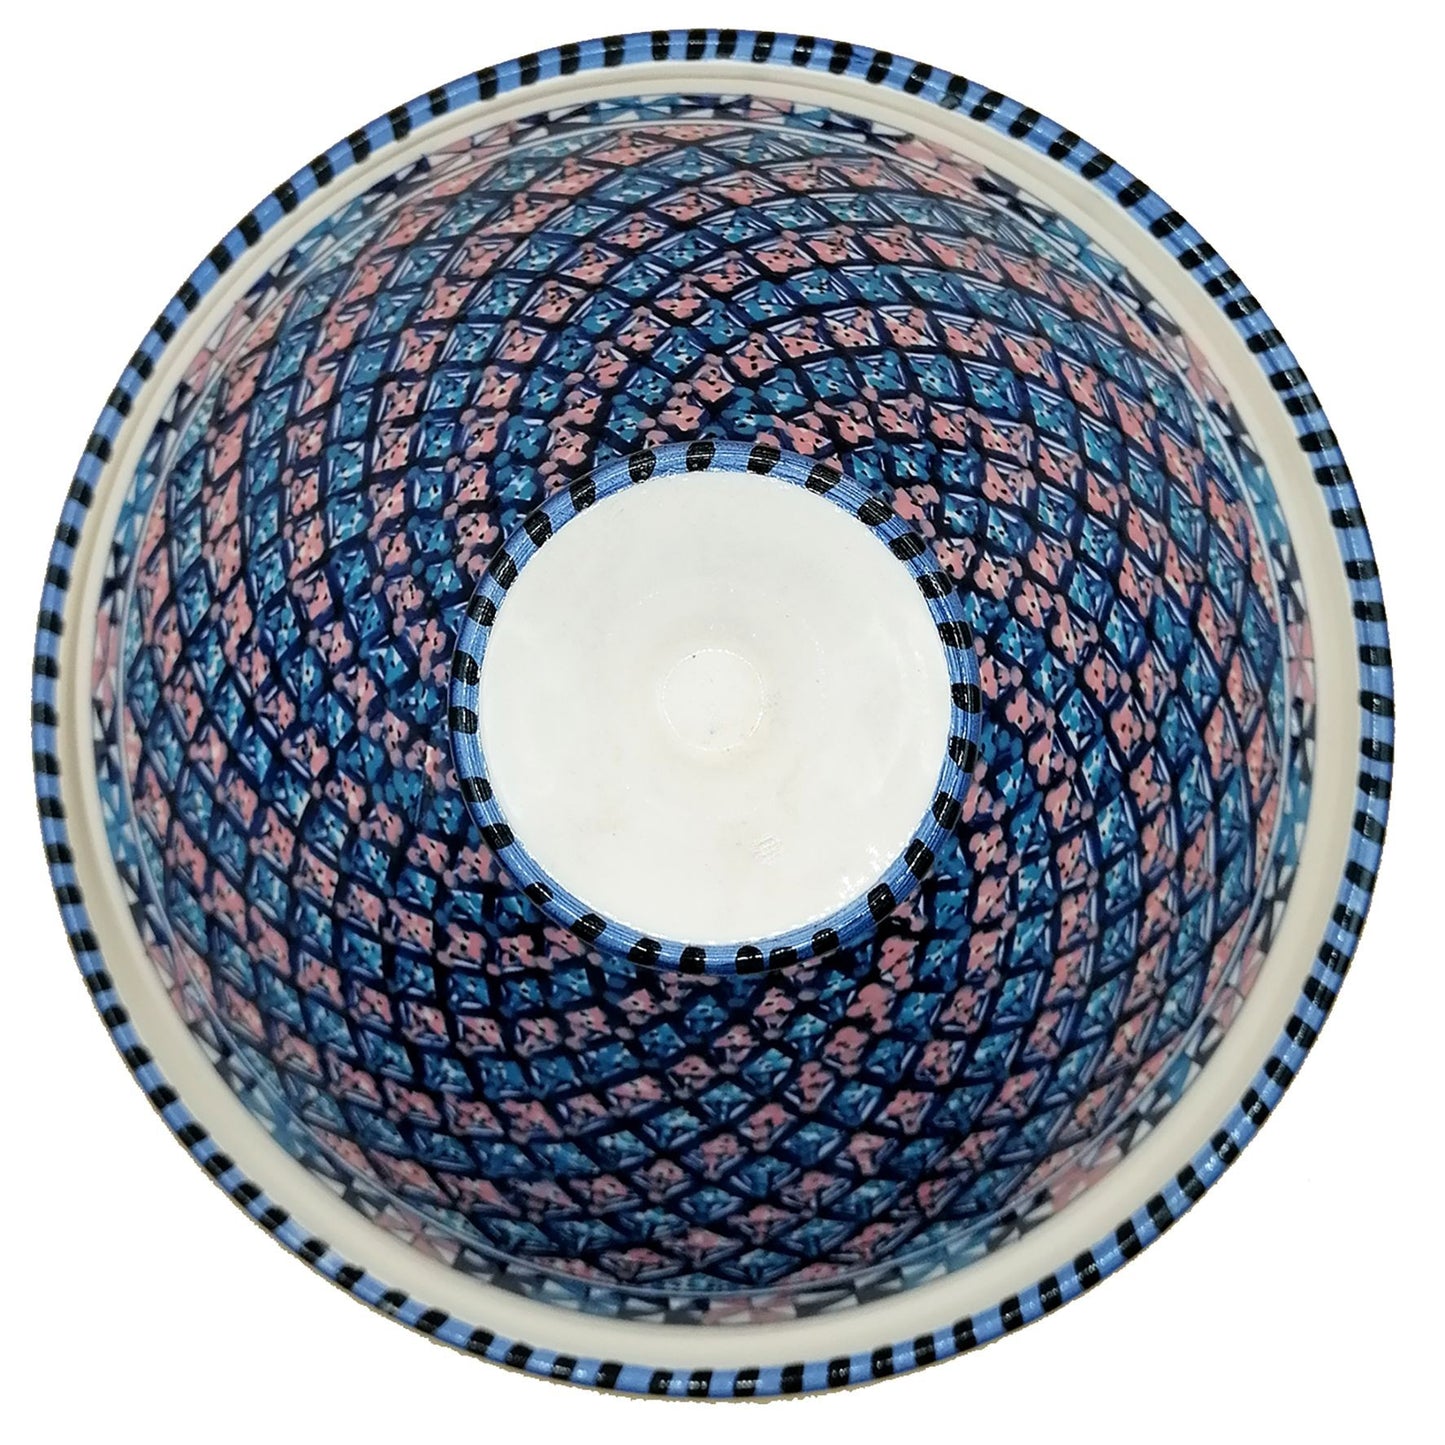 Arredo Etnico Tajine Decorativa Ceramica Marocchina Tunisina 32cm 0311200909